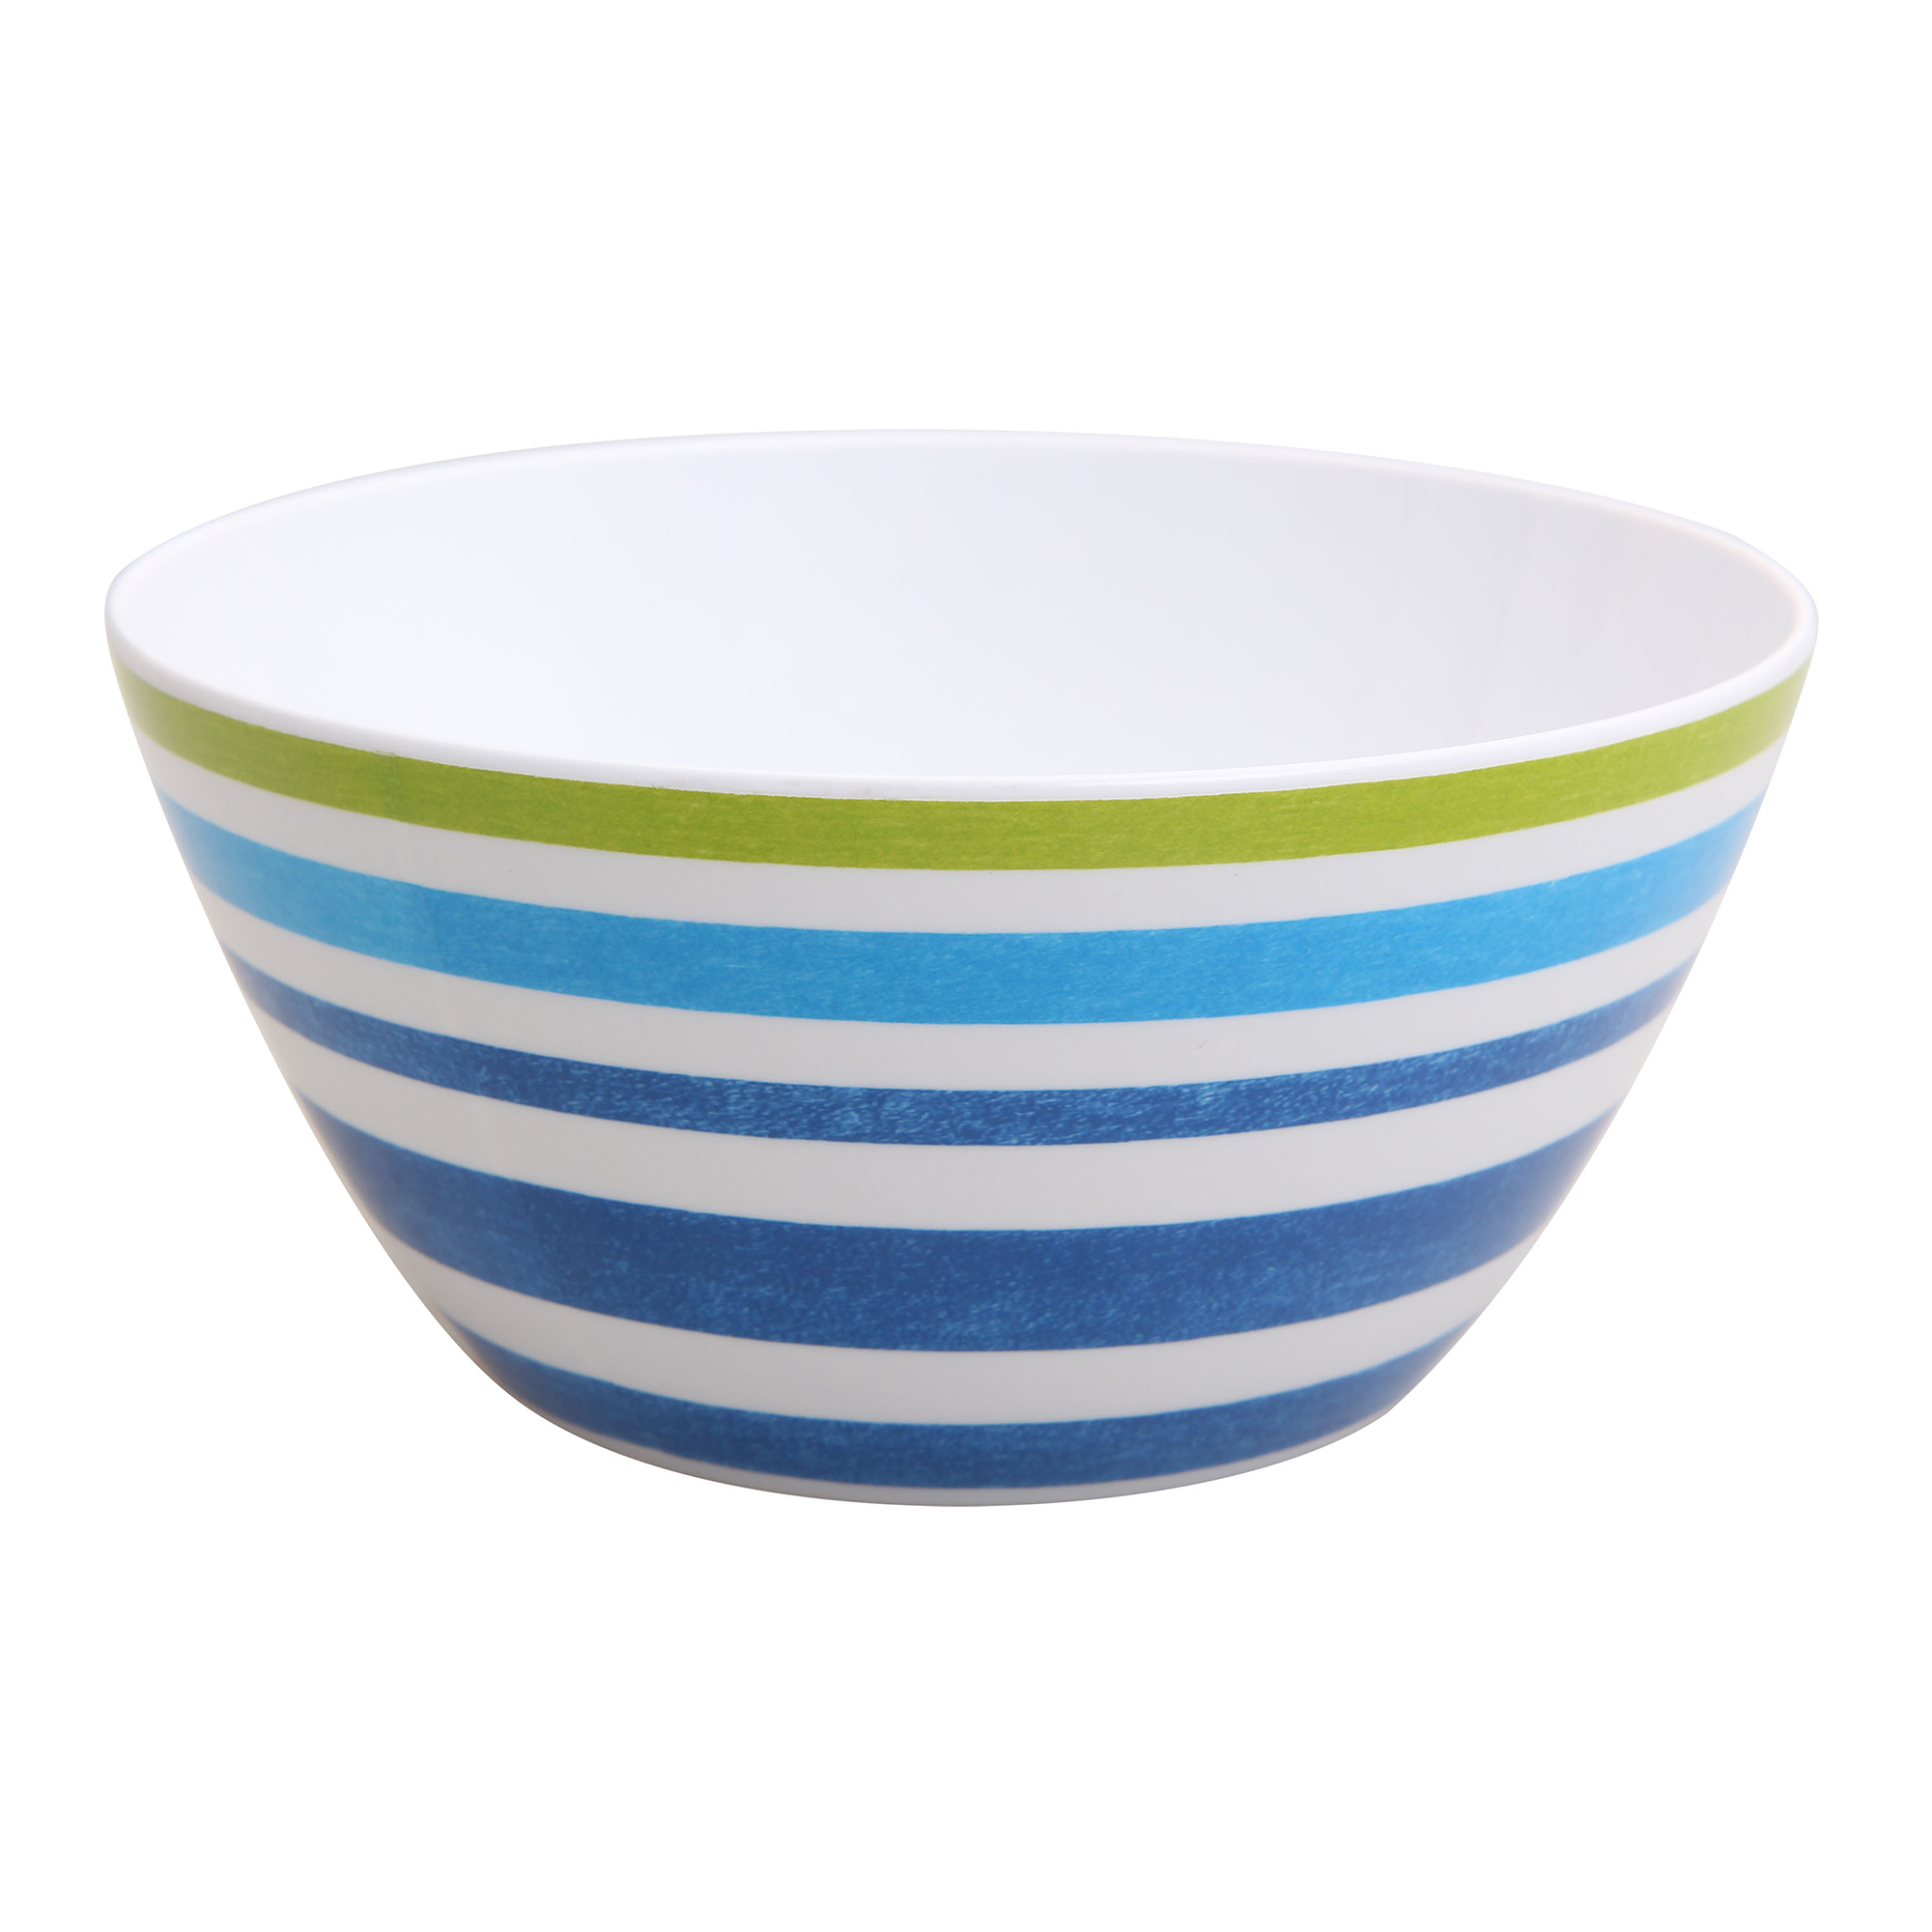 Mainstays Kids Melamine Blue Striped Bowls, Set of 6 - image 5 of 5